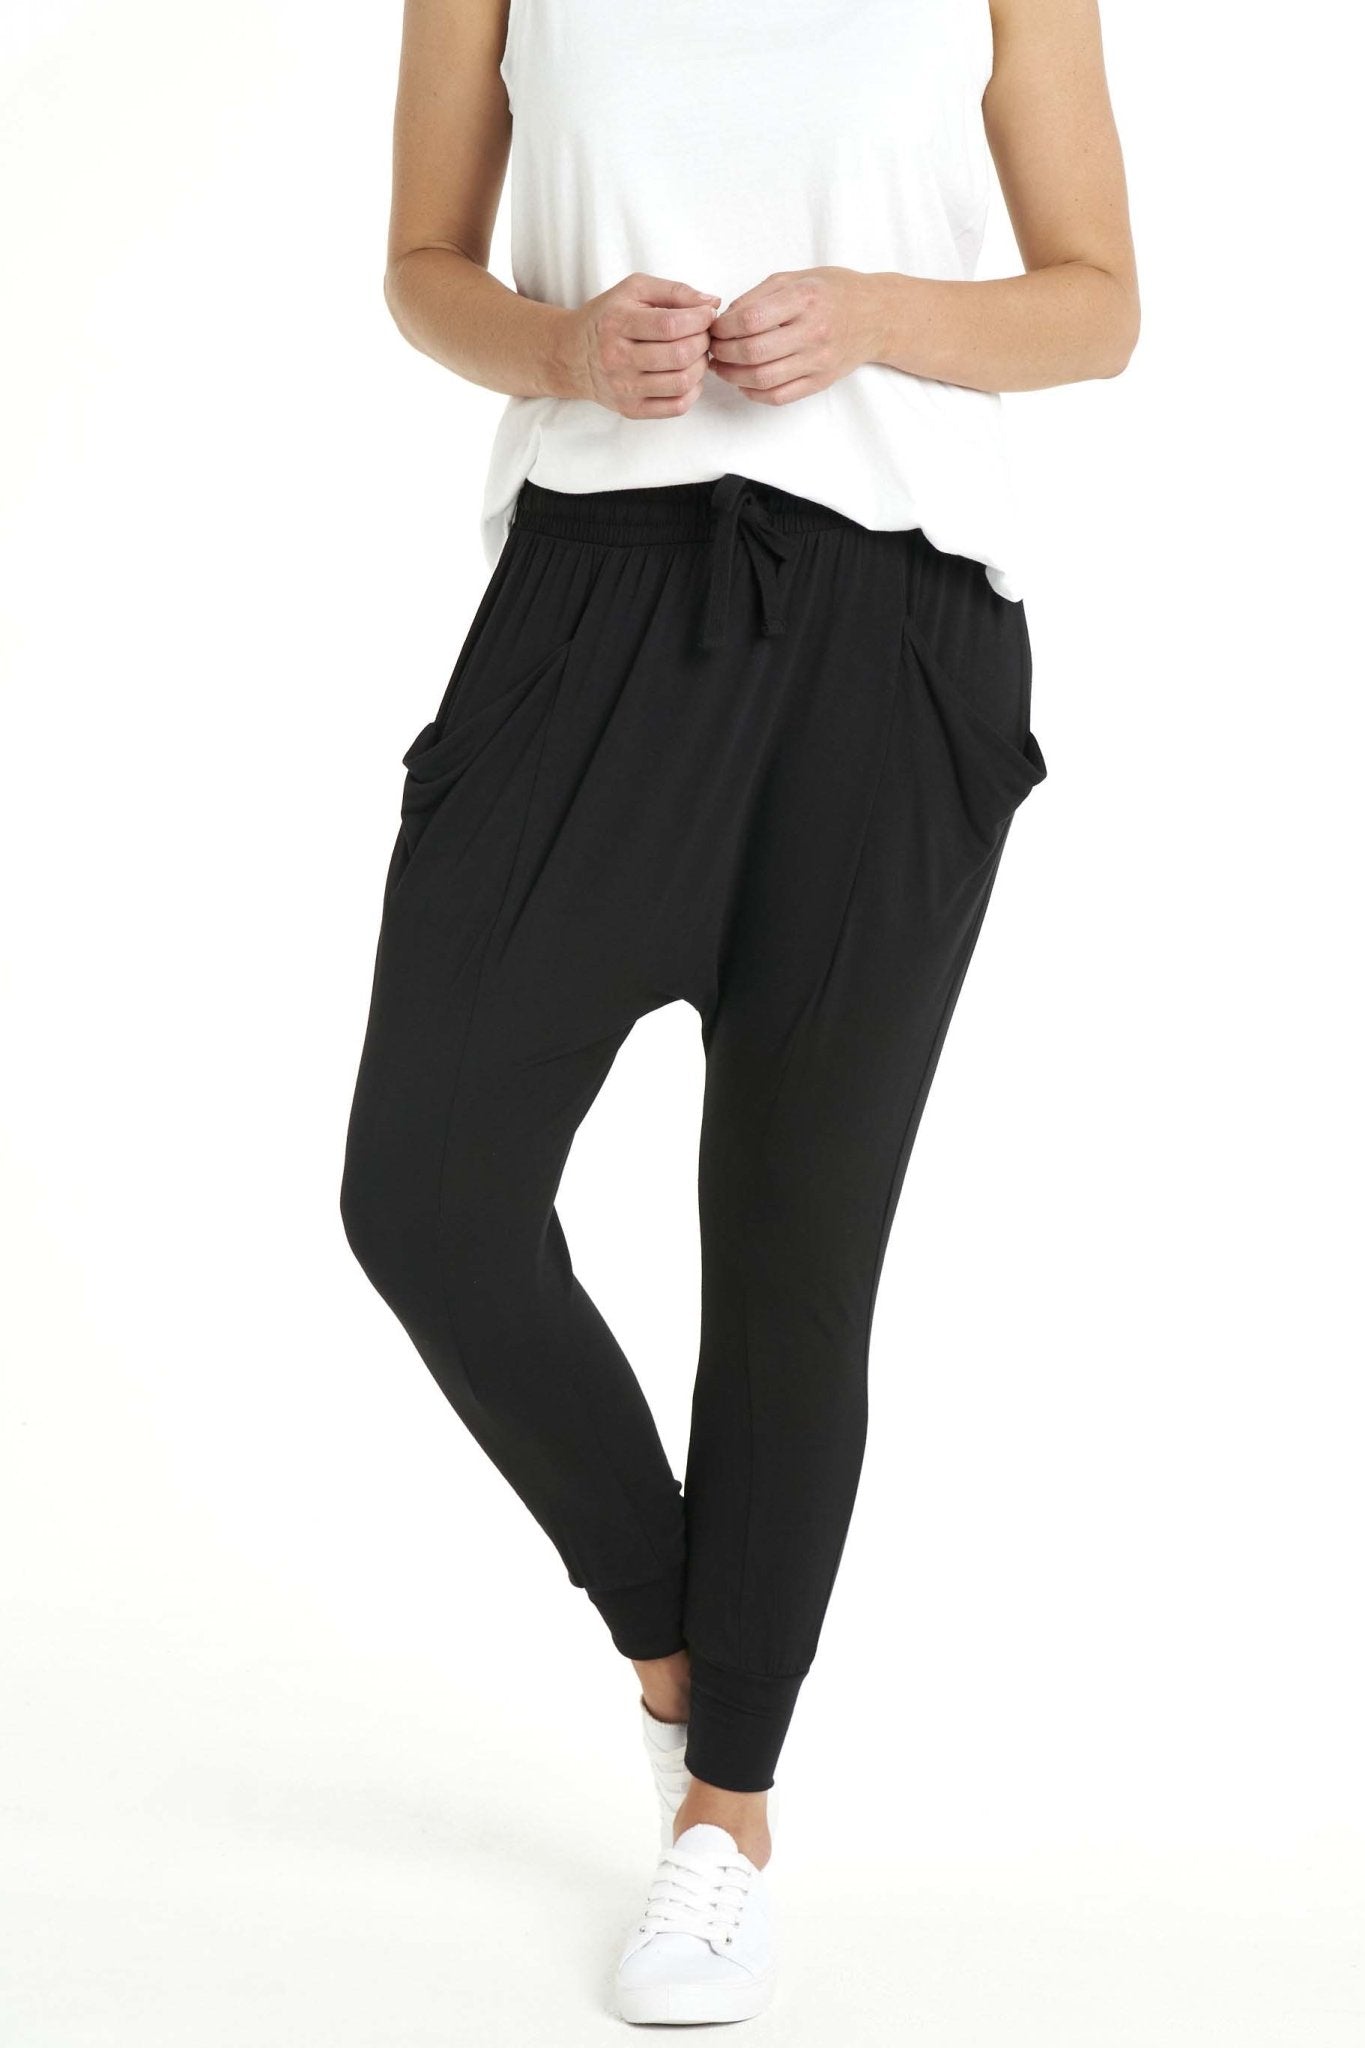 Betty Basics Barcelona Pants in Black - Hey Sara